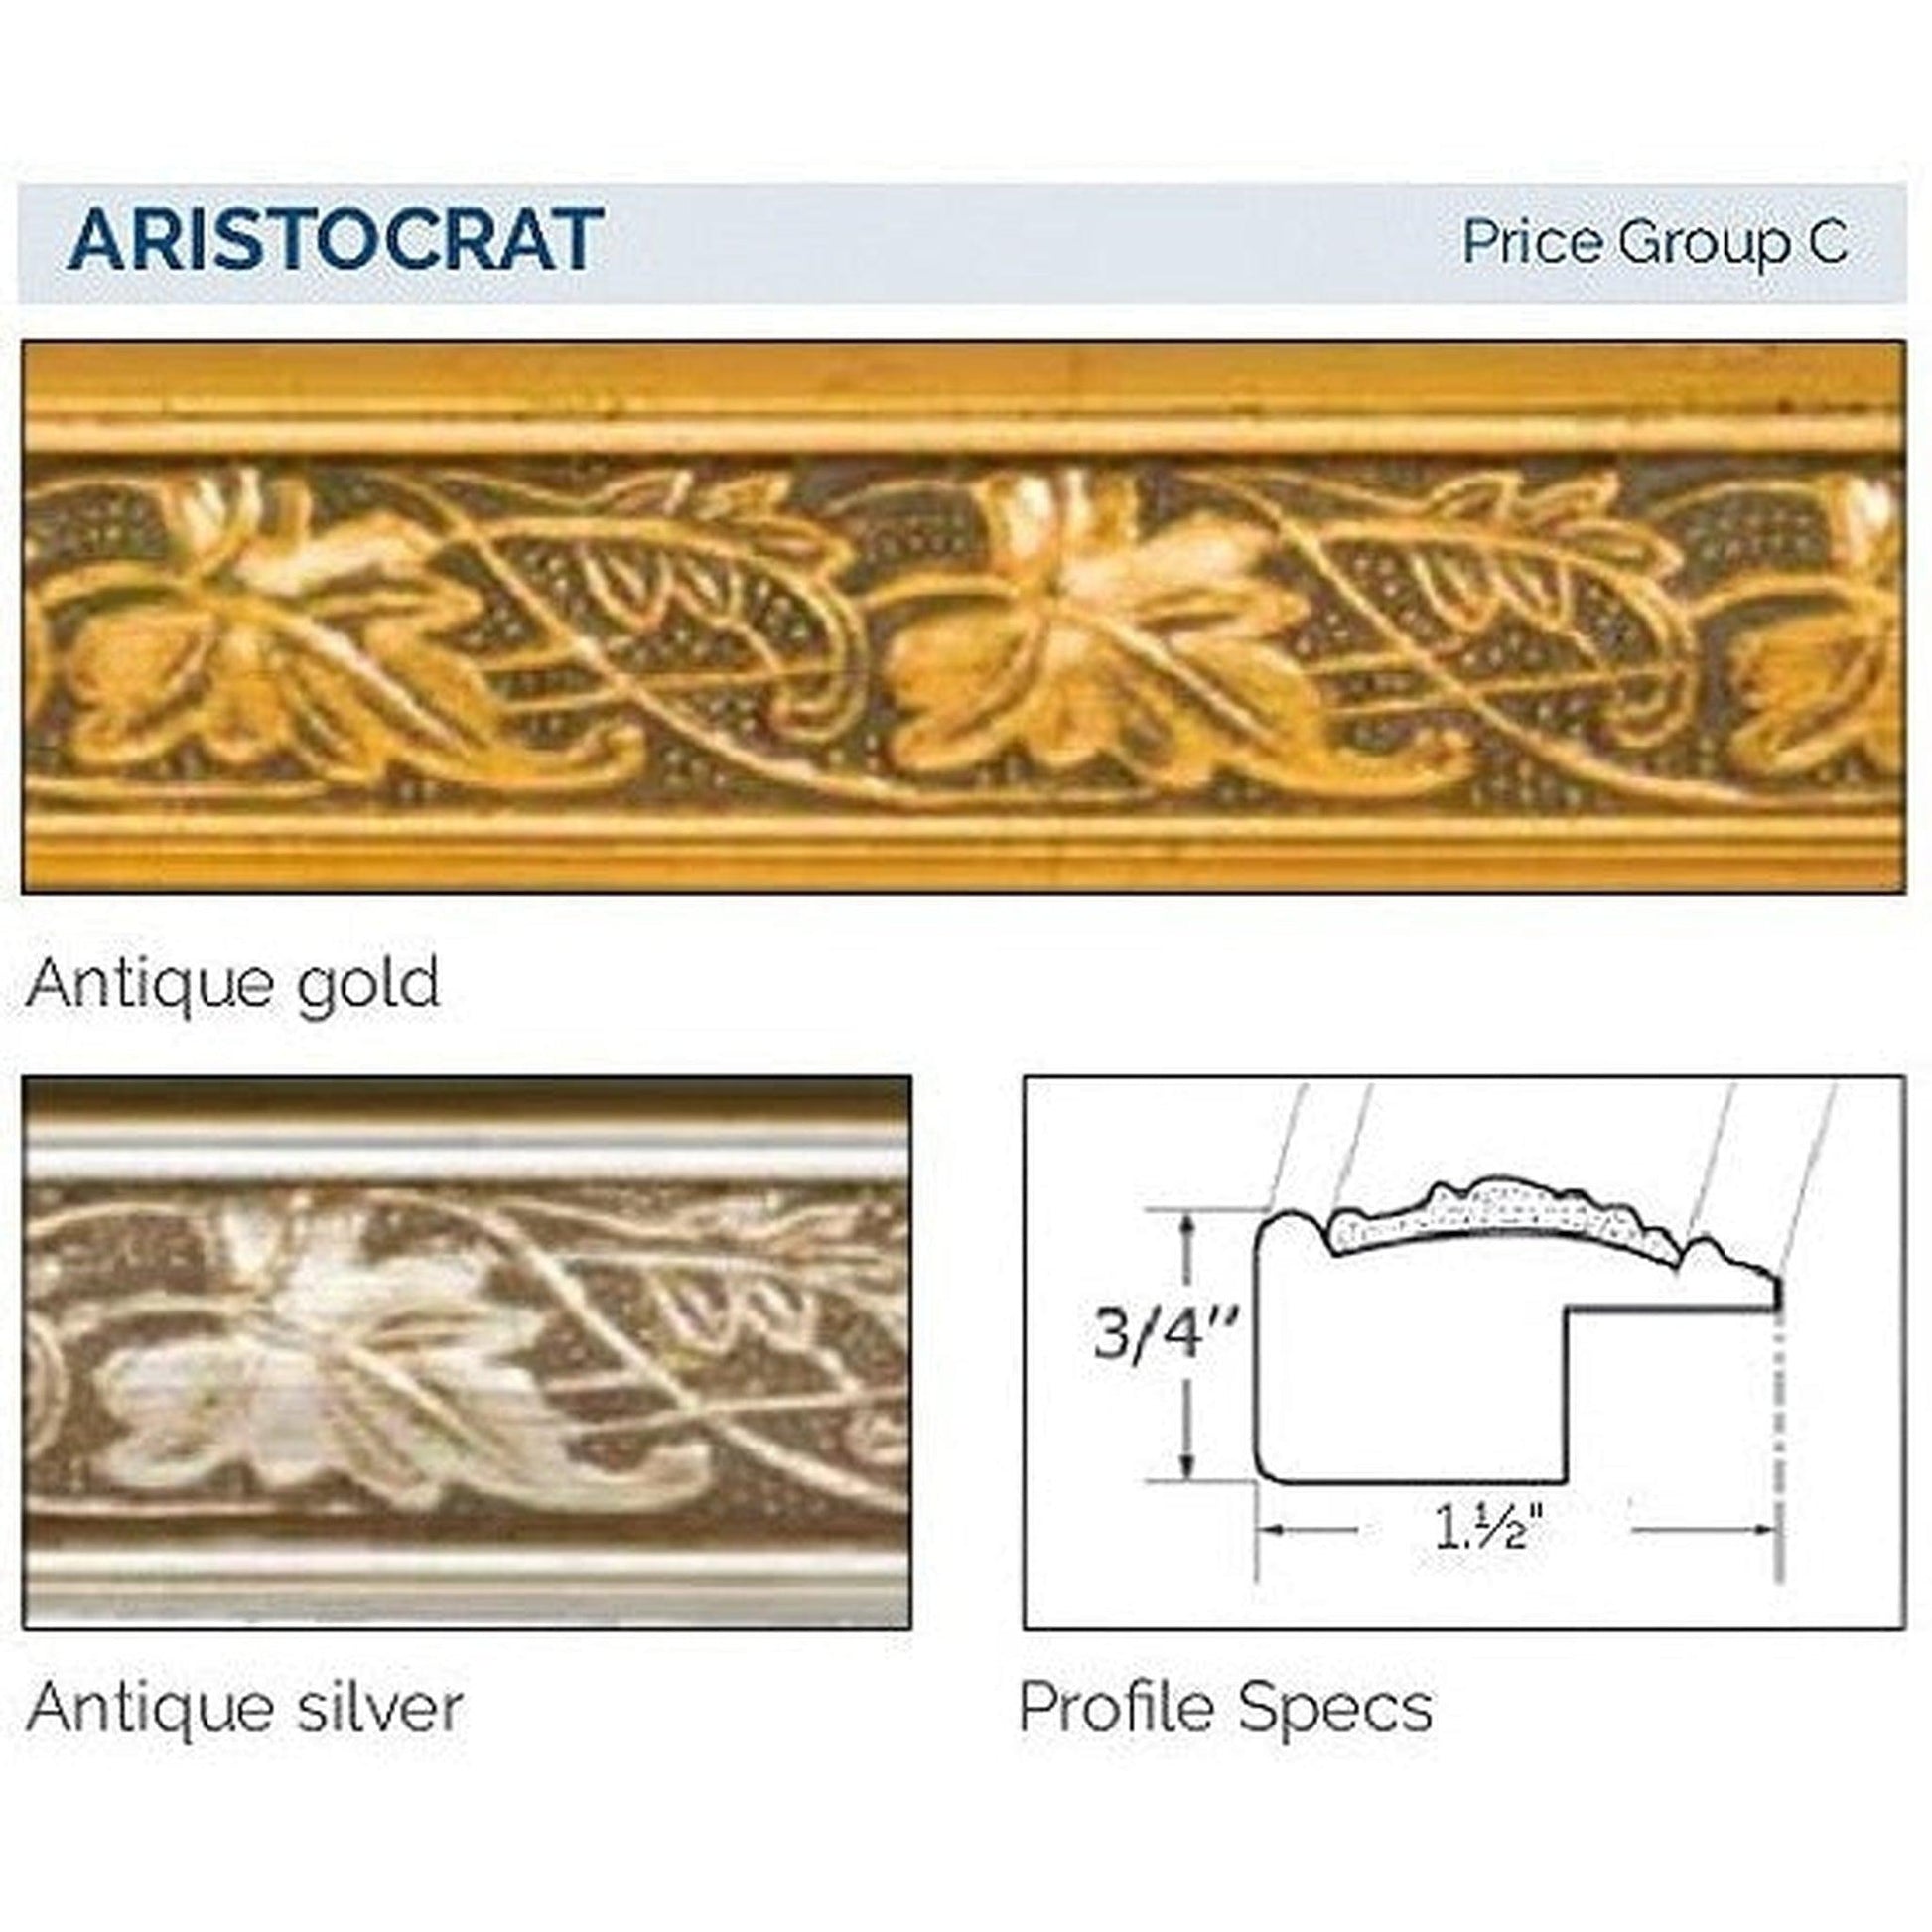 Afina Signature 24" x 36" Aristocrat Antique Gold Recessed Reversible Hinged Single Door Medicine Cabinet With Beveled Edge Mirror